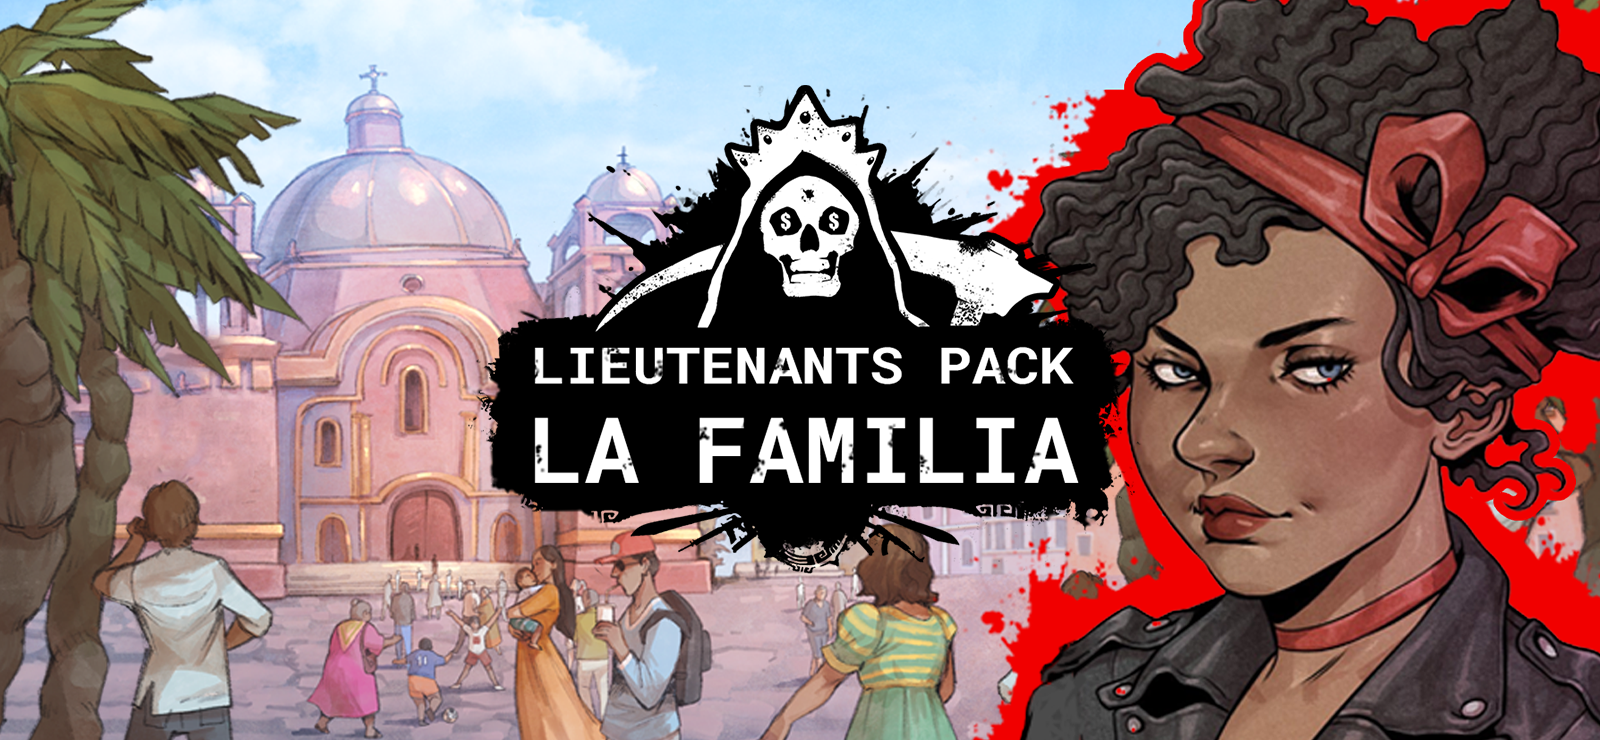 Cartel Tycoon - Lieutenants Pack - La Familia